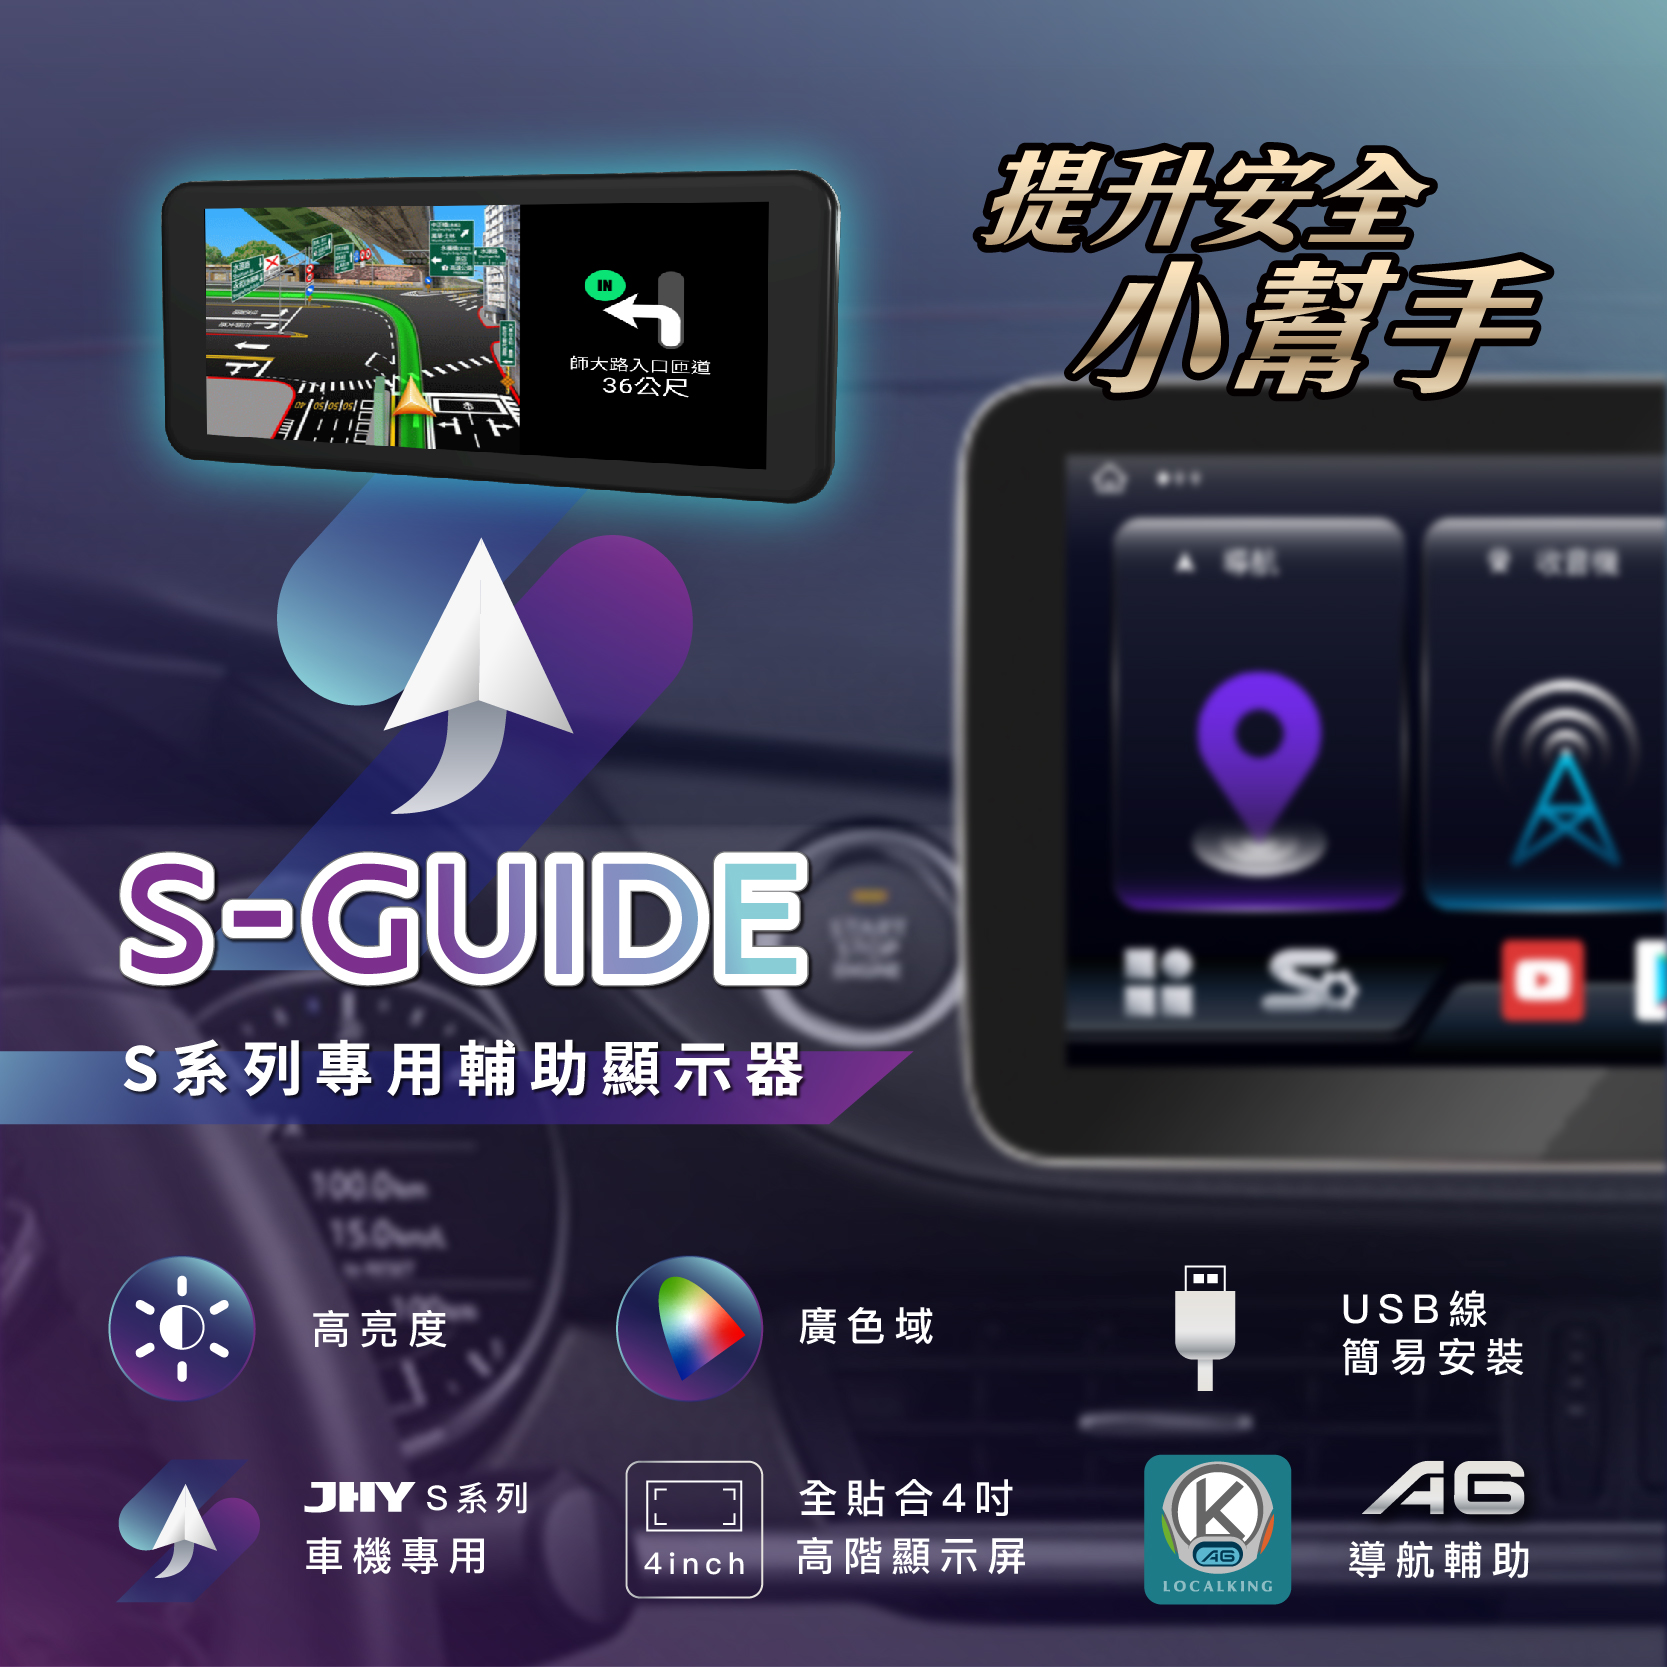 S-GUIDE，S系列專用輔助顯示器，提升安全小幫手